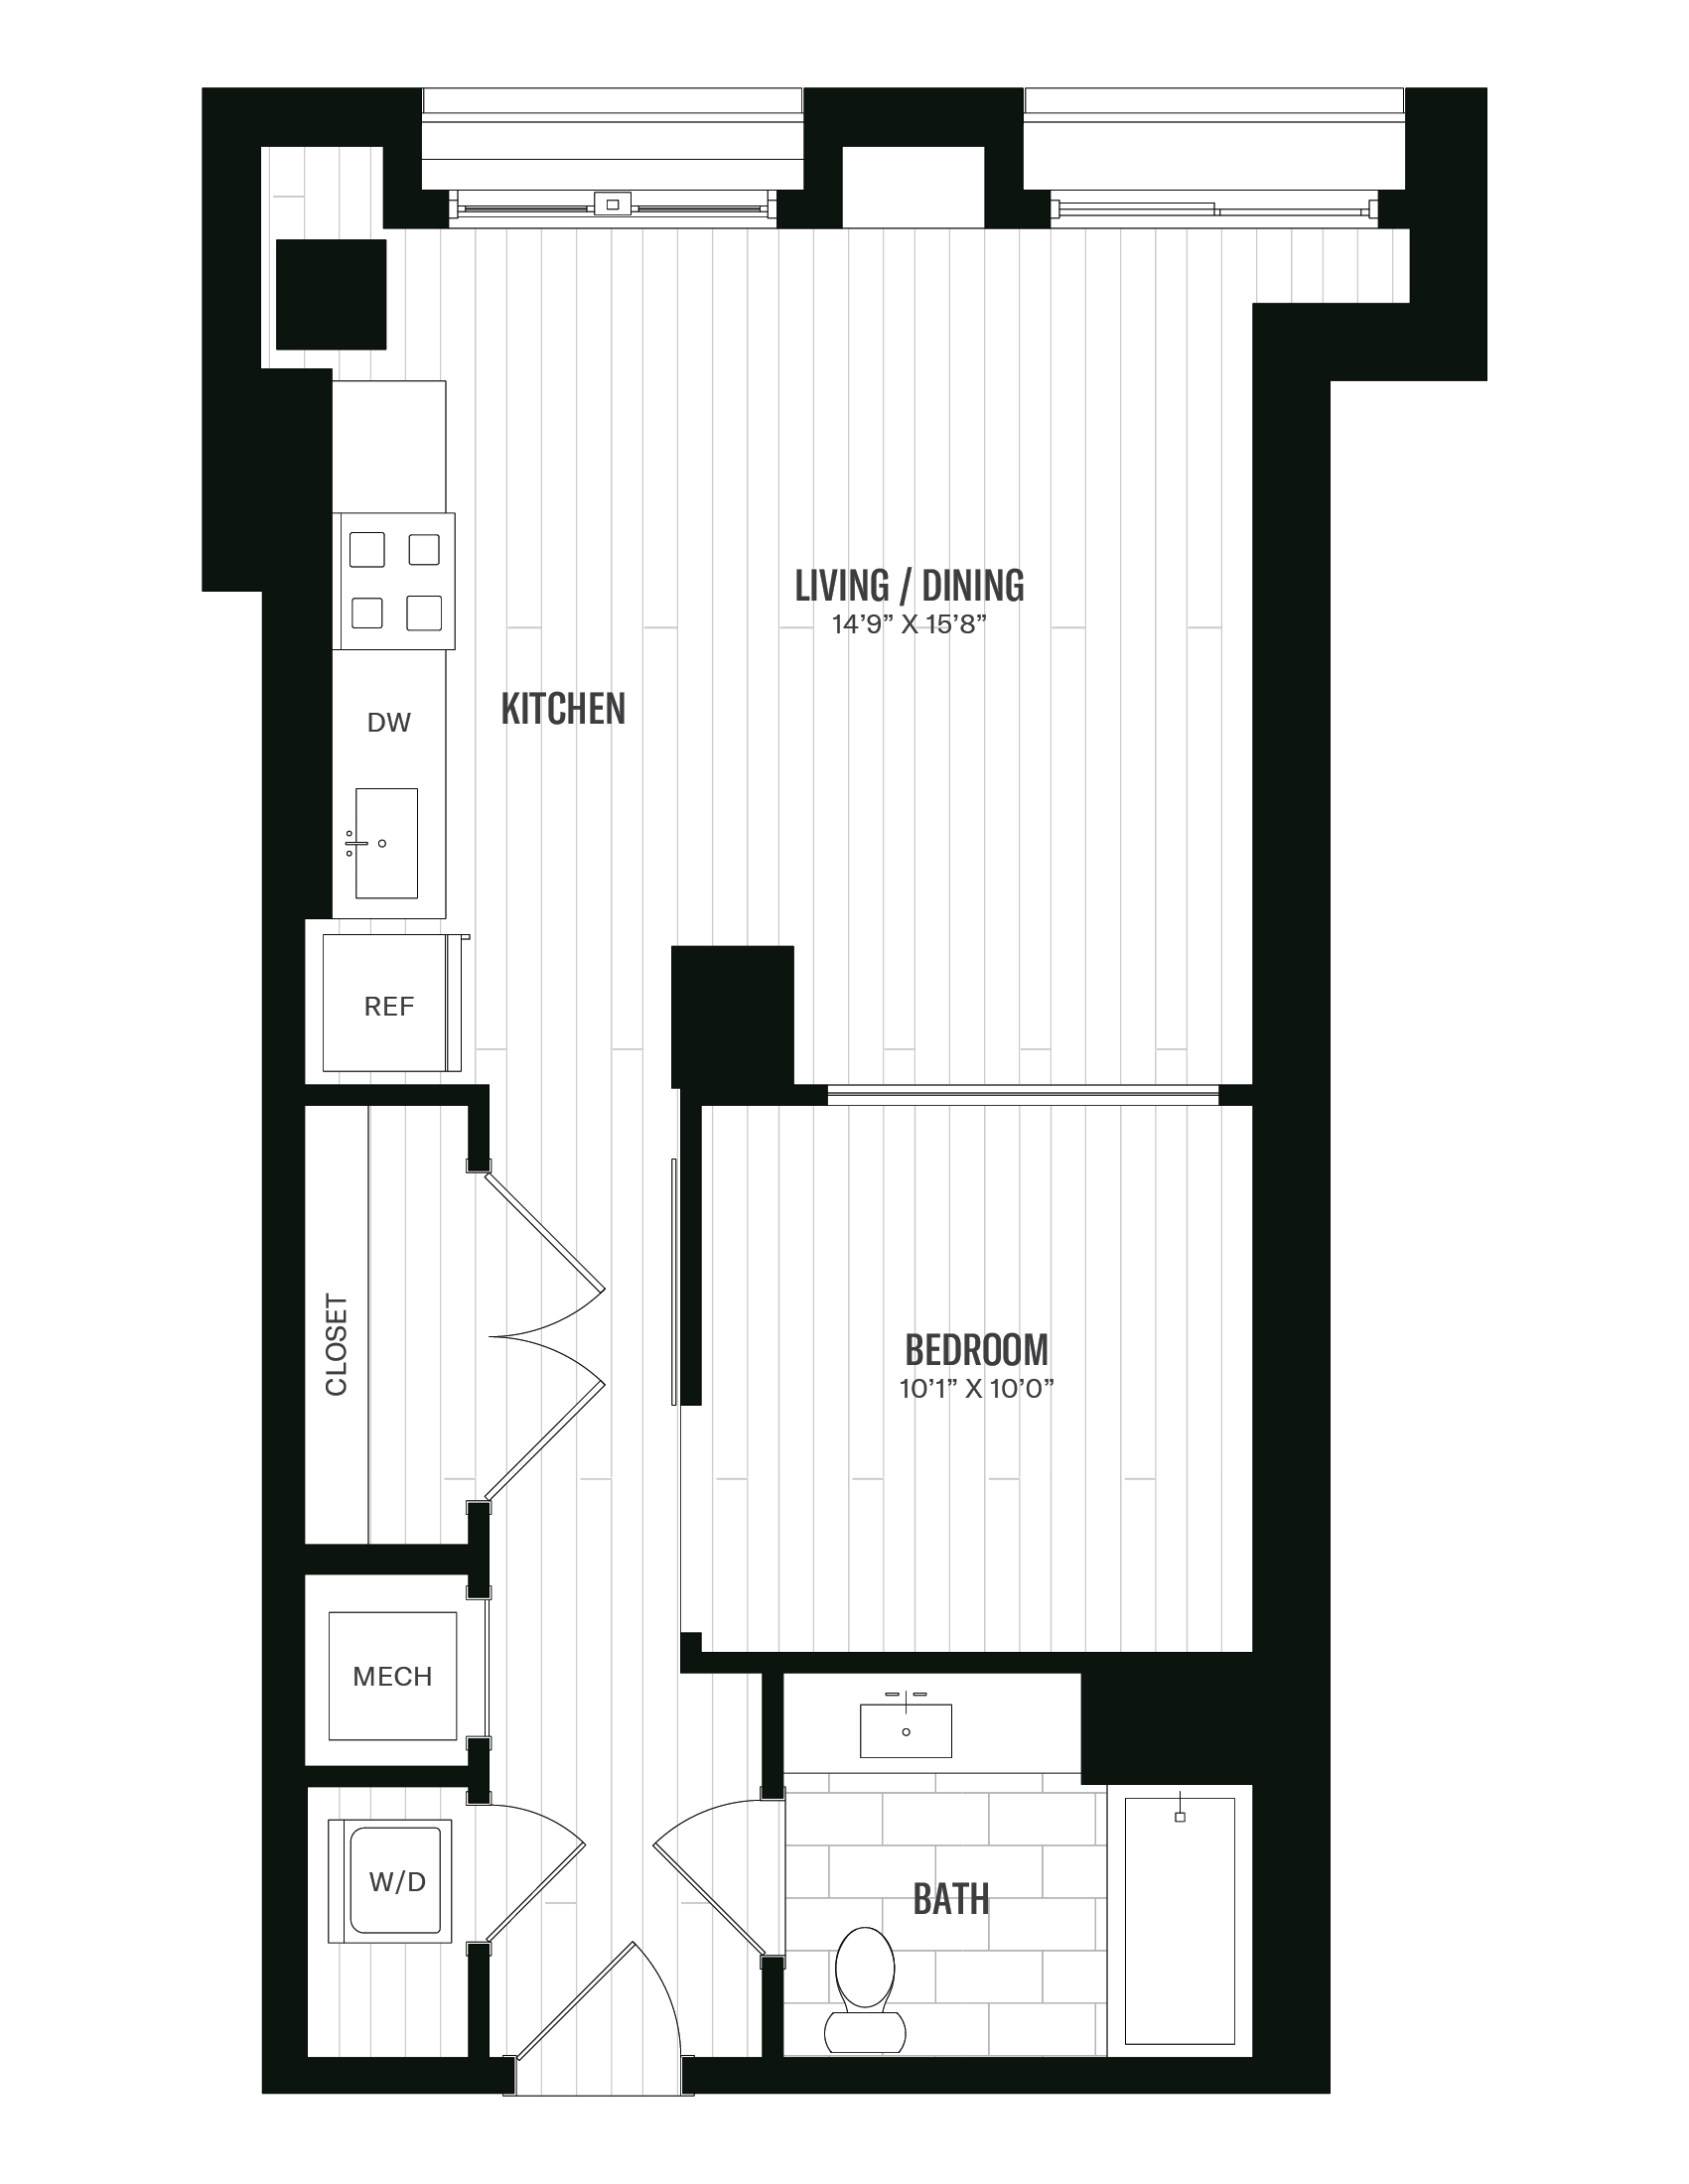 Floorplan image of unit 222